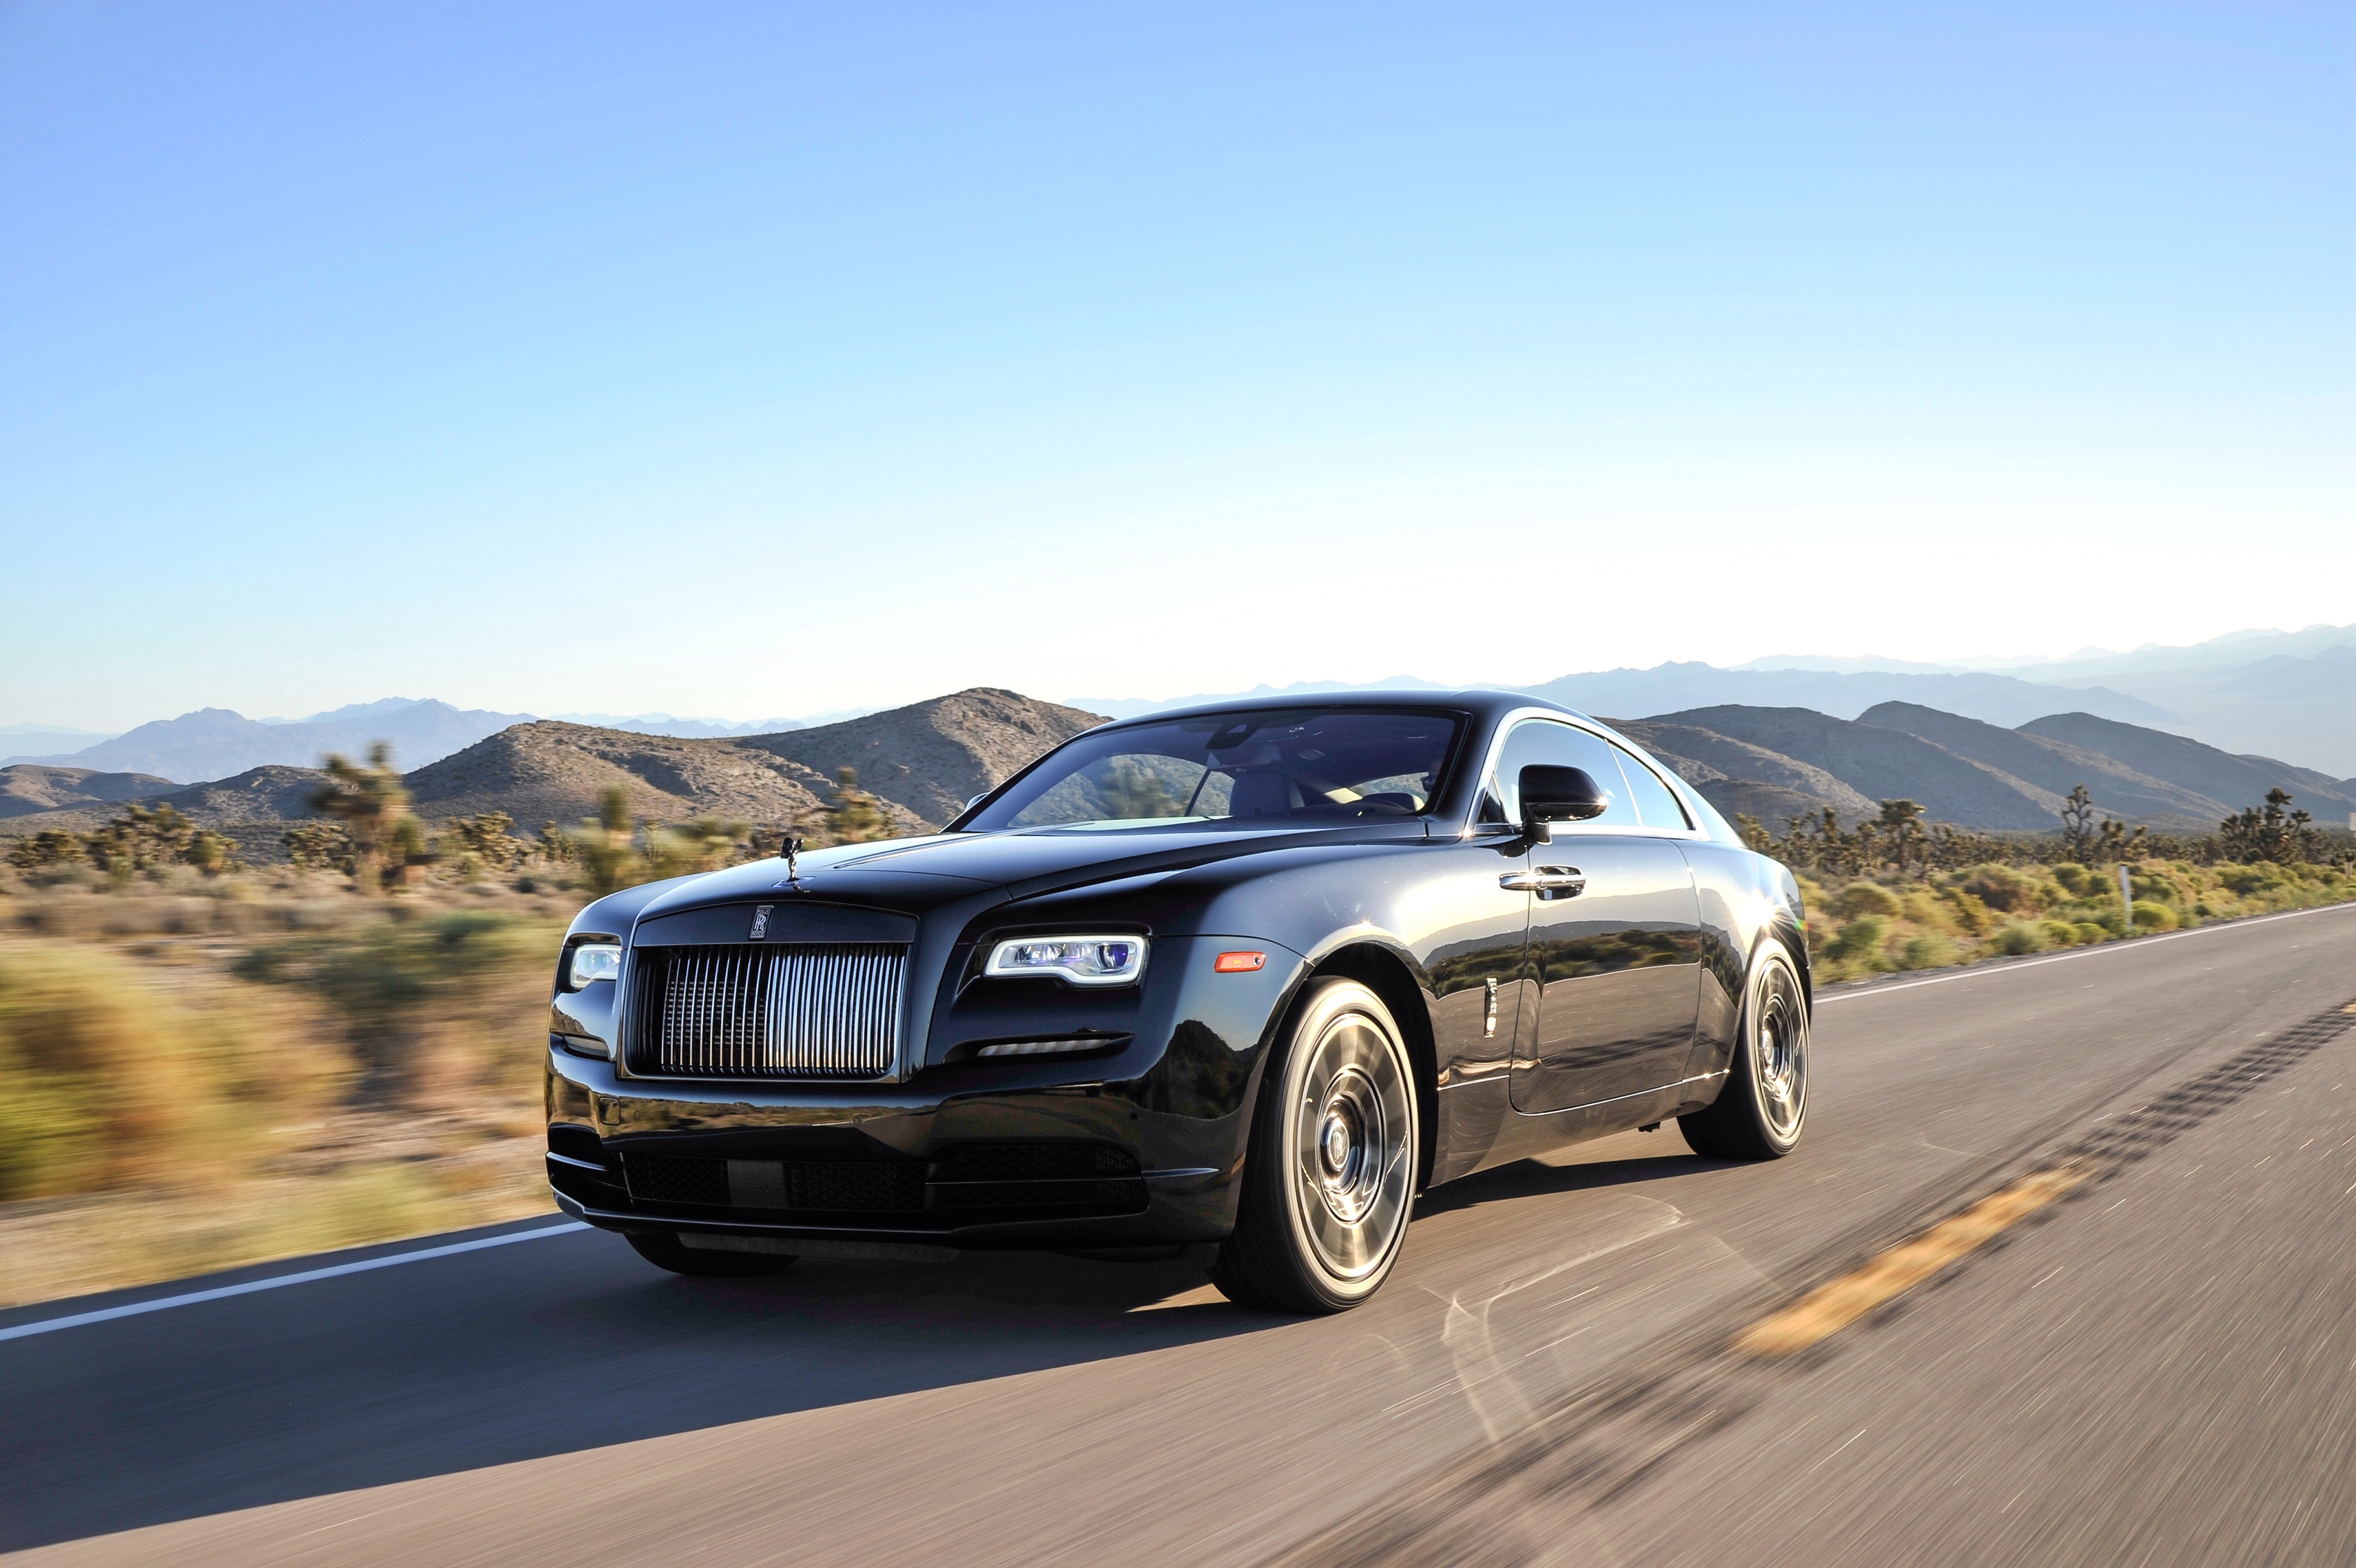 Rolls Royce Wraith Rolls Royce Black Car Car Vehicle Luxury Car 4096x2726